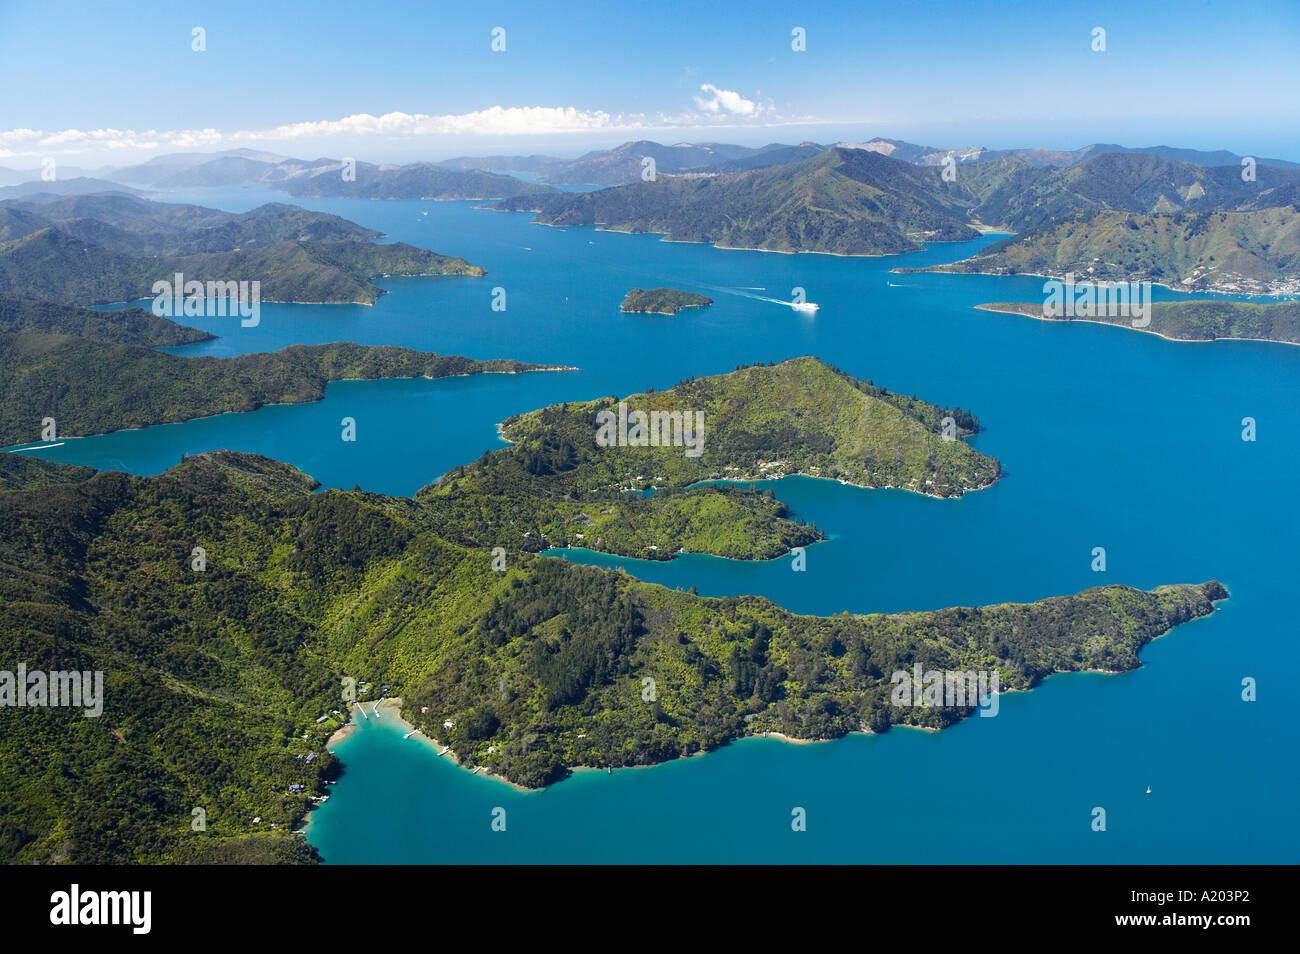 Baie Lochmara (en bas), Double Bay (à droite), Torea Bay (à gauche) et de la Reine-Charlotte, Marlborough Sounds, île du Sud, de la Nouvelle-Zélande Banque D'Images